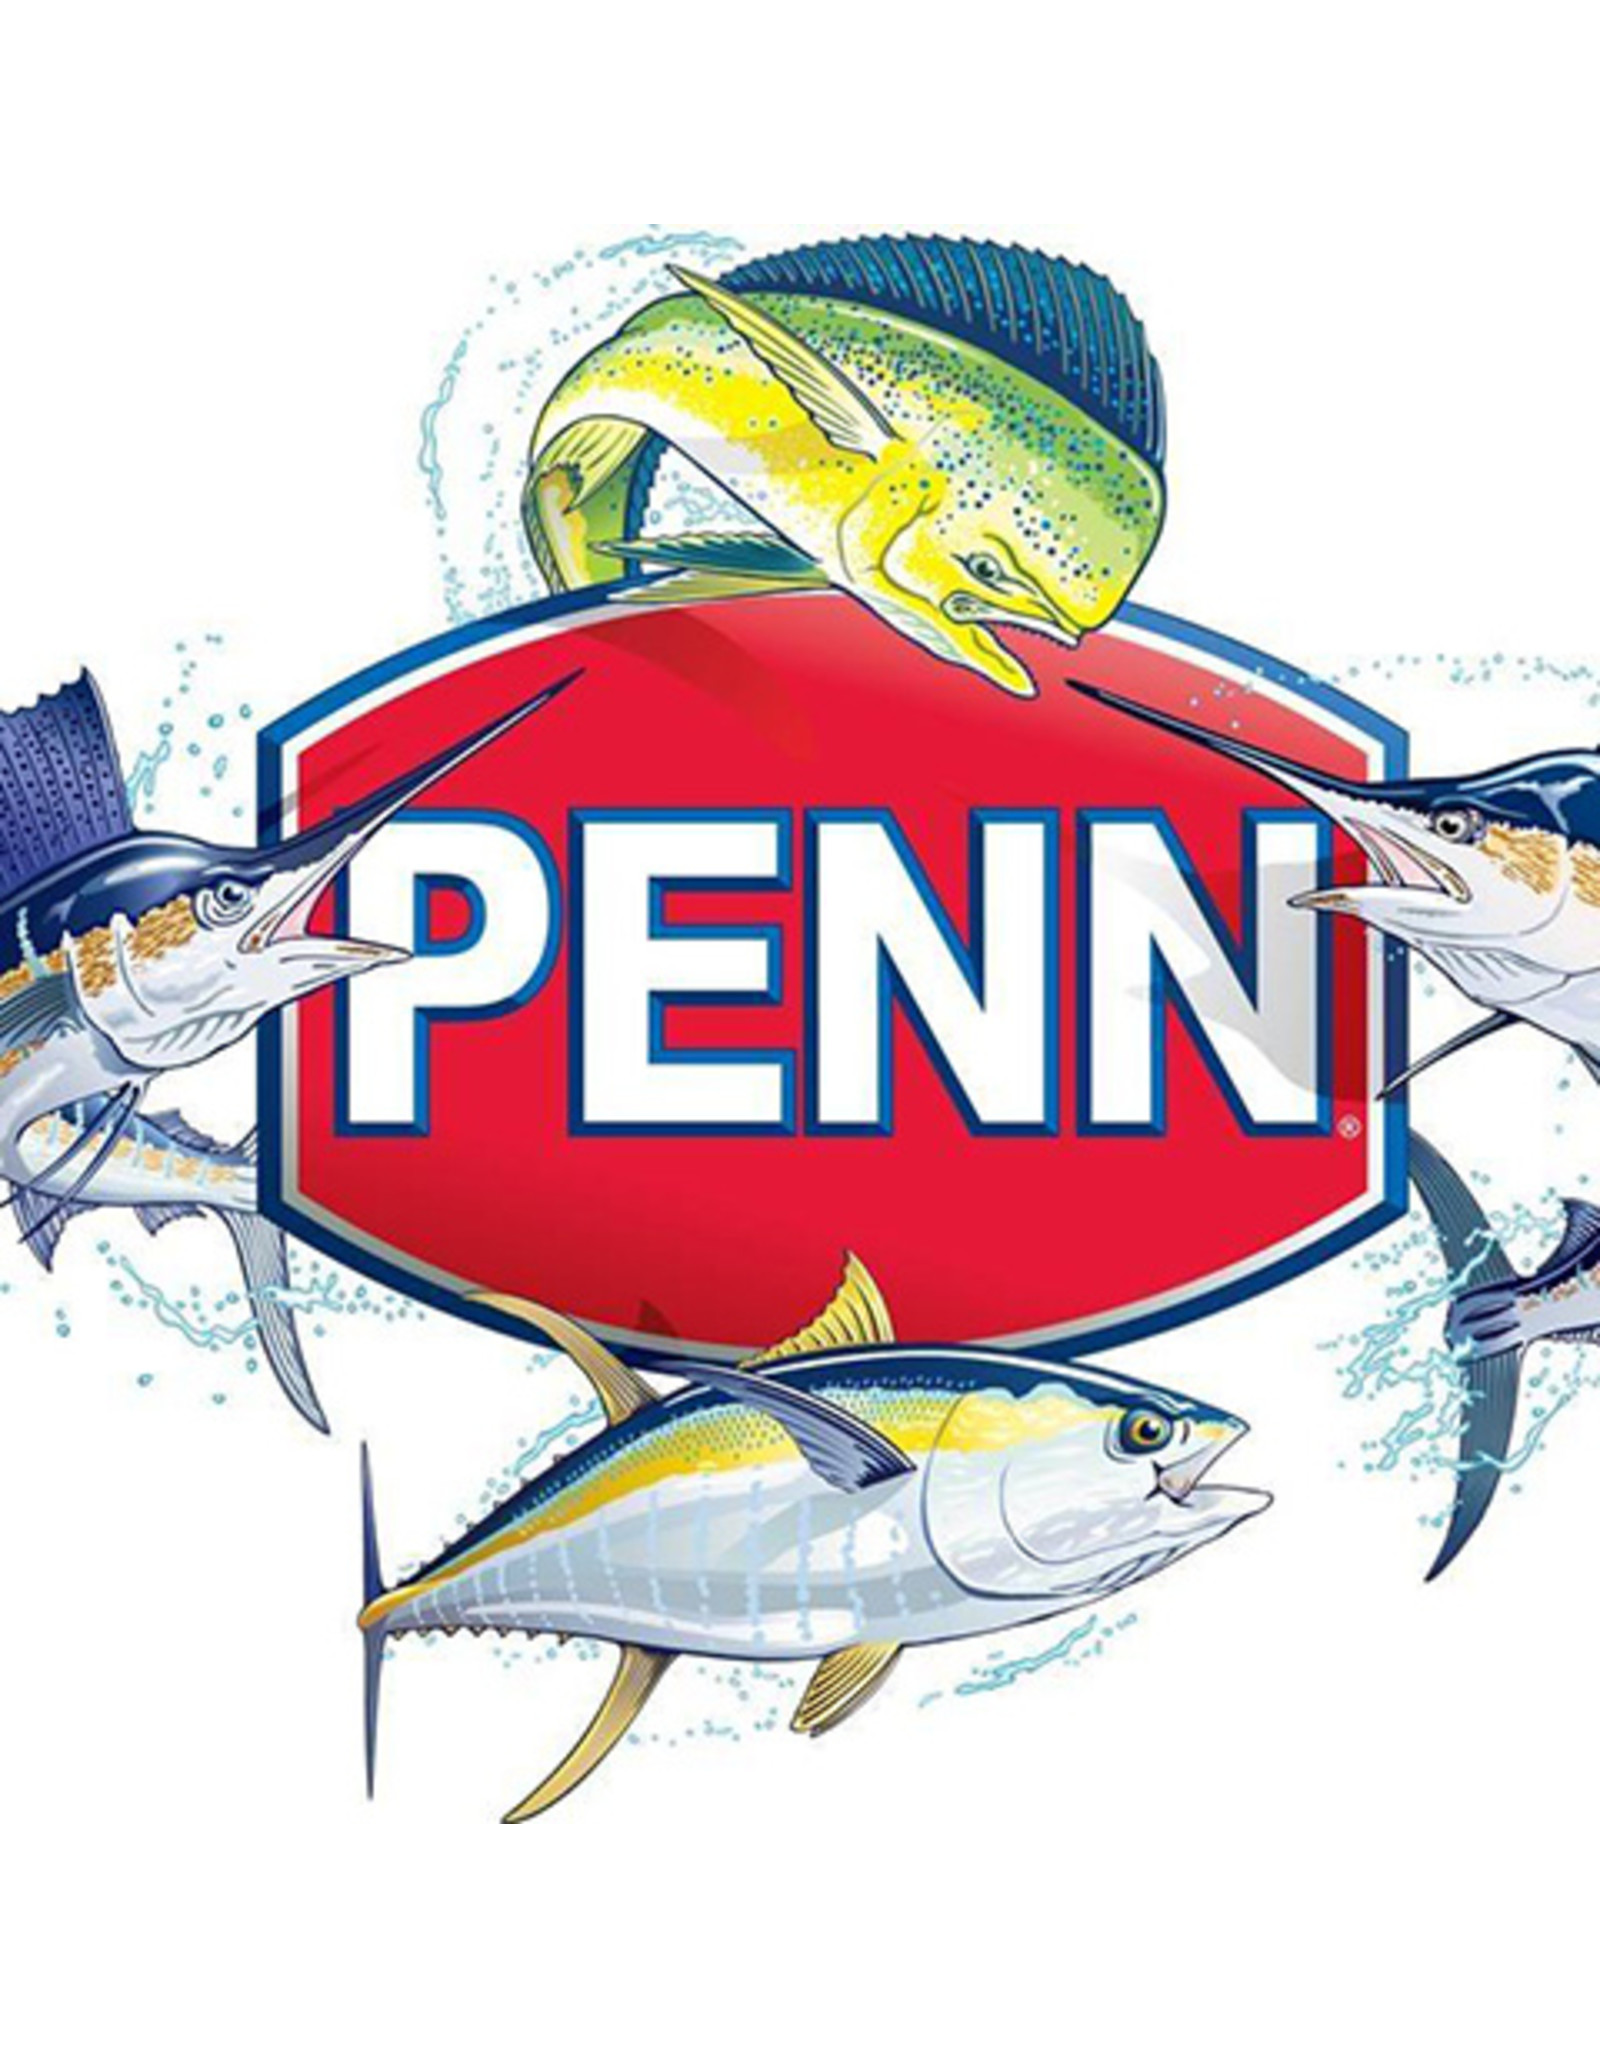 Penn 28-10  RING LEFT SIDE INNER/ NLA